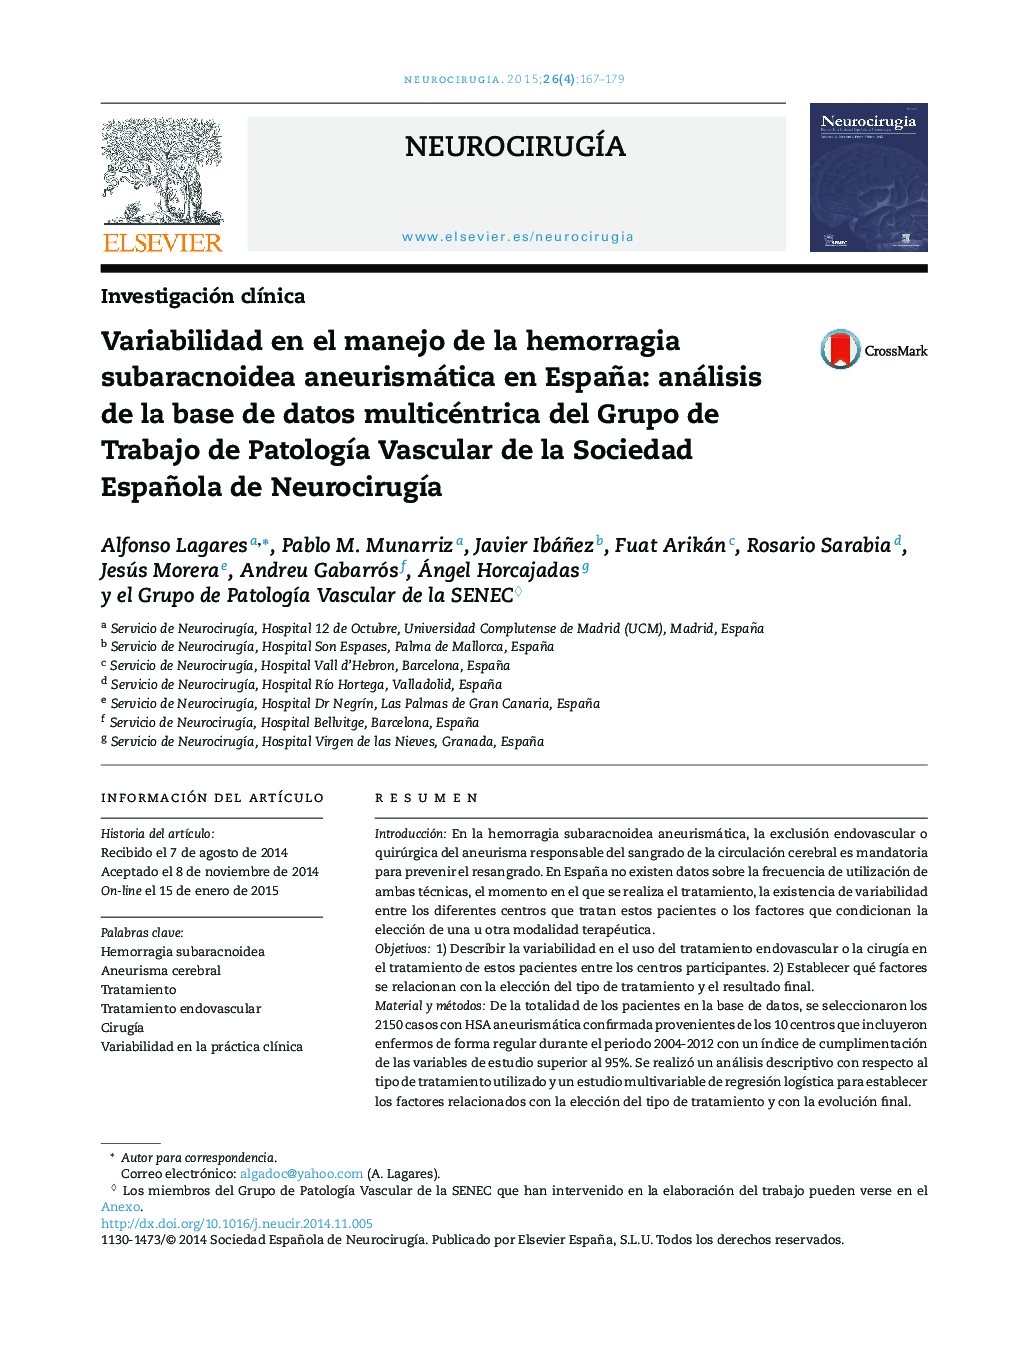 Variabilidad en el manejo de la hemorragia subaracnoidea aneurismática en España: análisis de la base de datos multicéntrica del Grupo de Trabajo de PatologÃ­a Vascular de la Sociedad Española de NeurocirugÃ­a